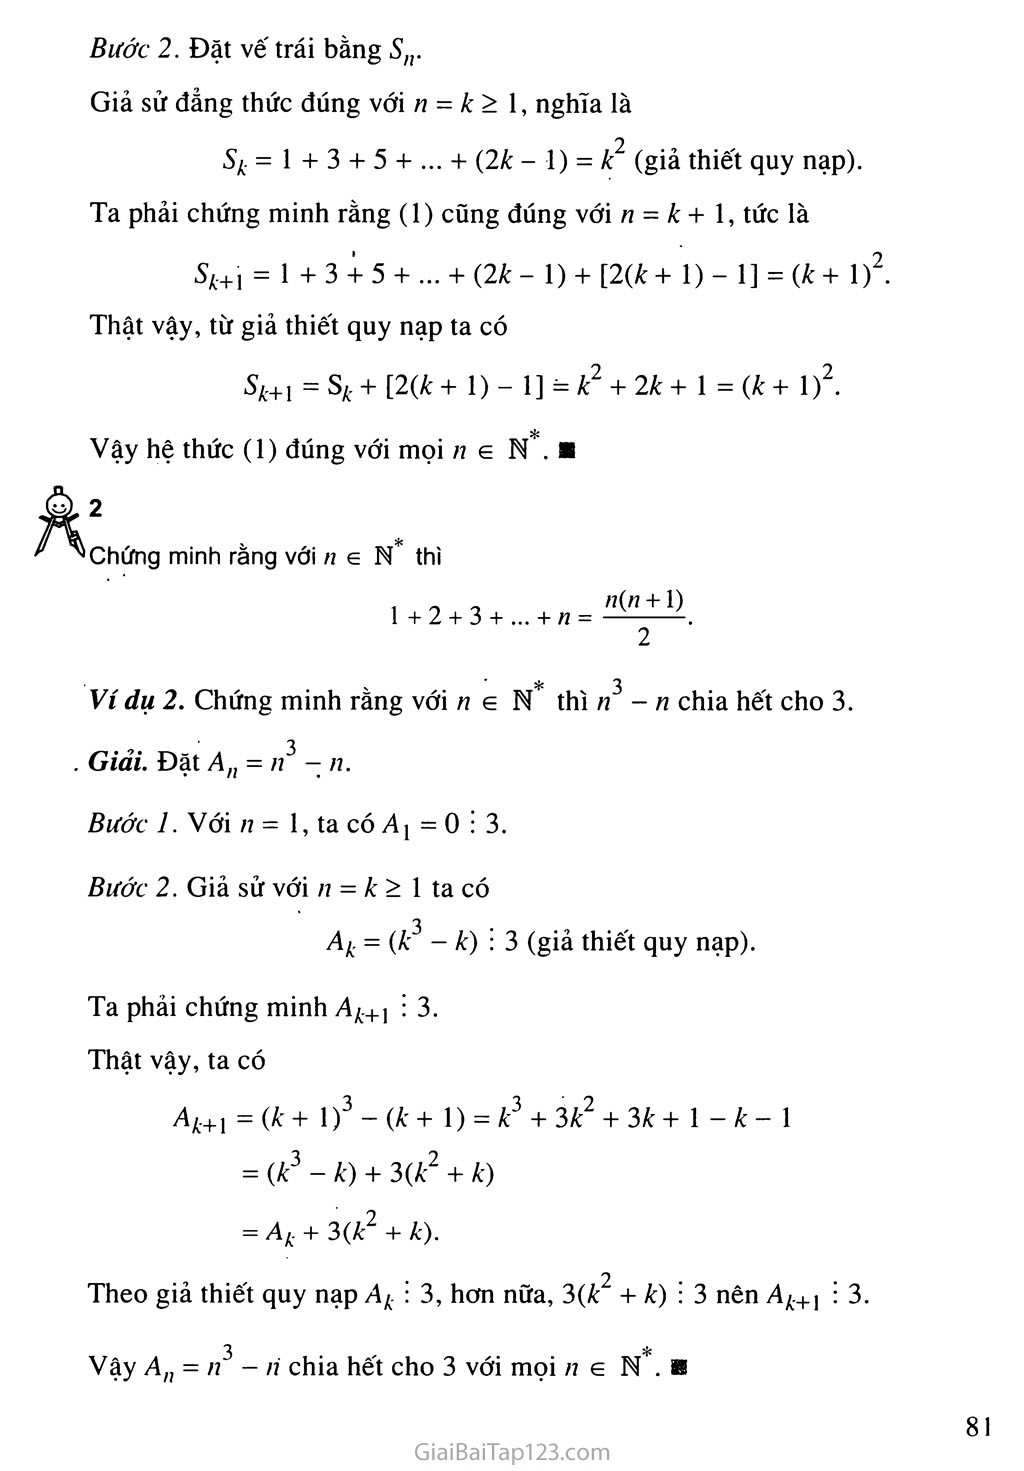 Bài 1. Phương pháp quy nạp toán học trang 3